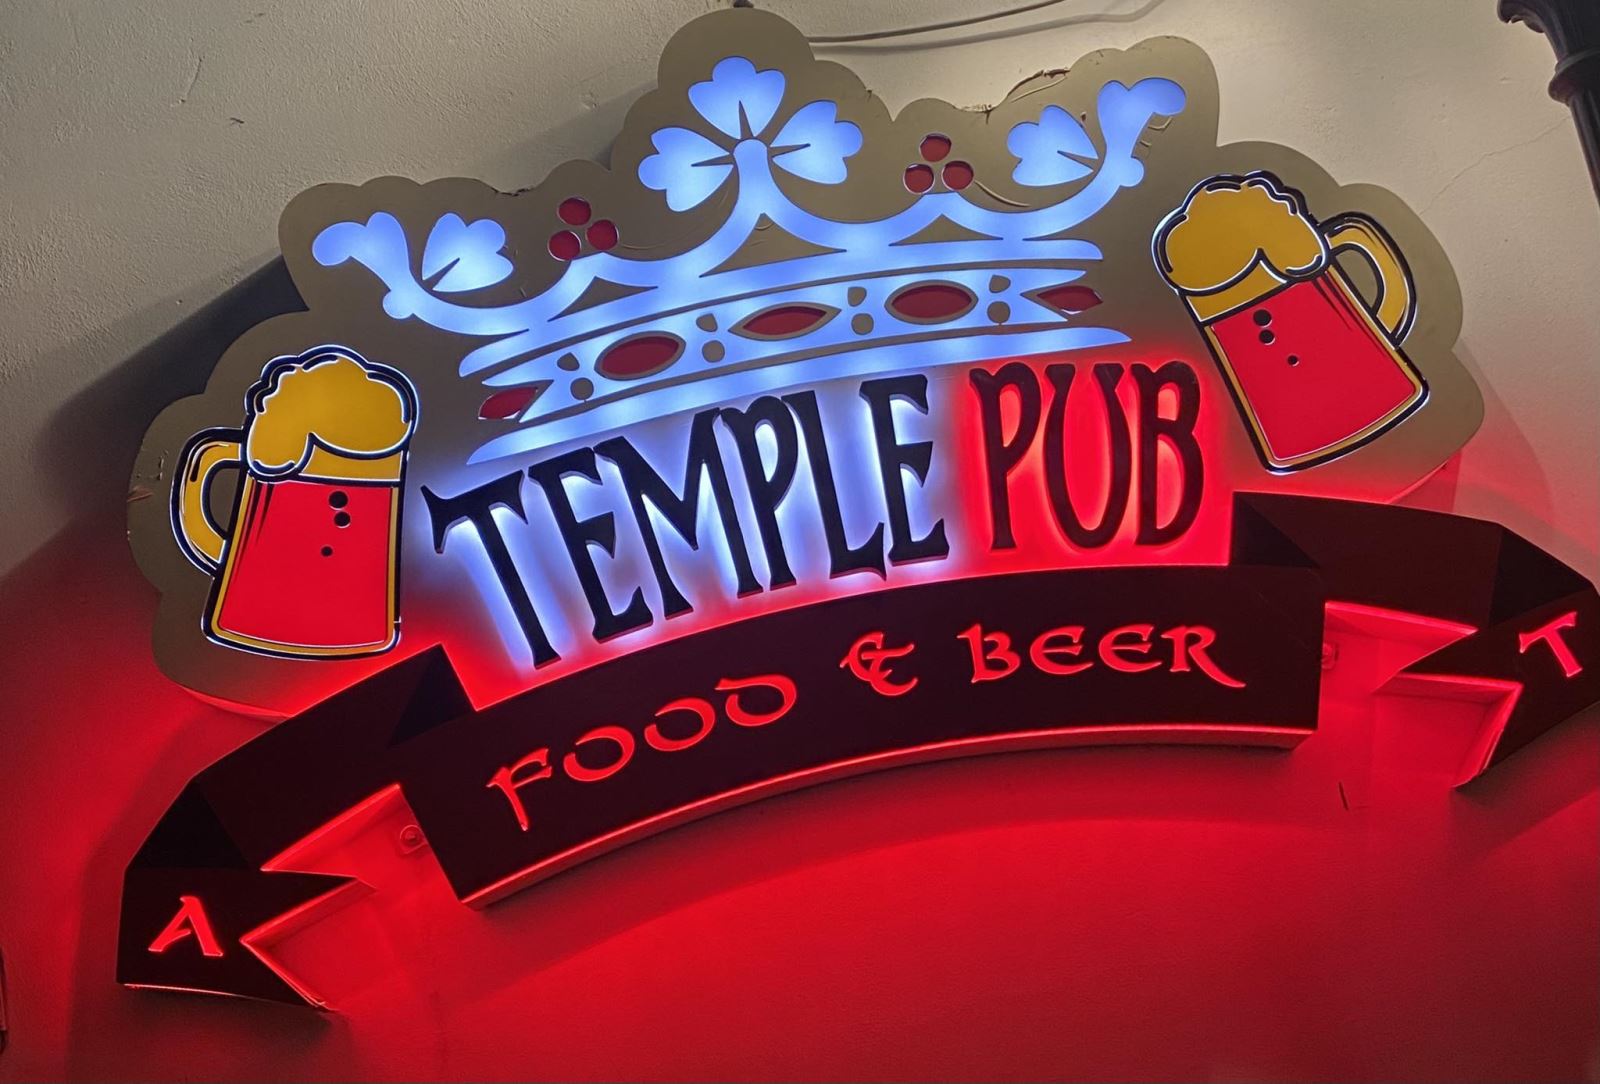 TemplePub